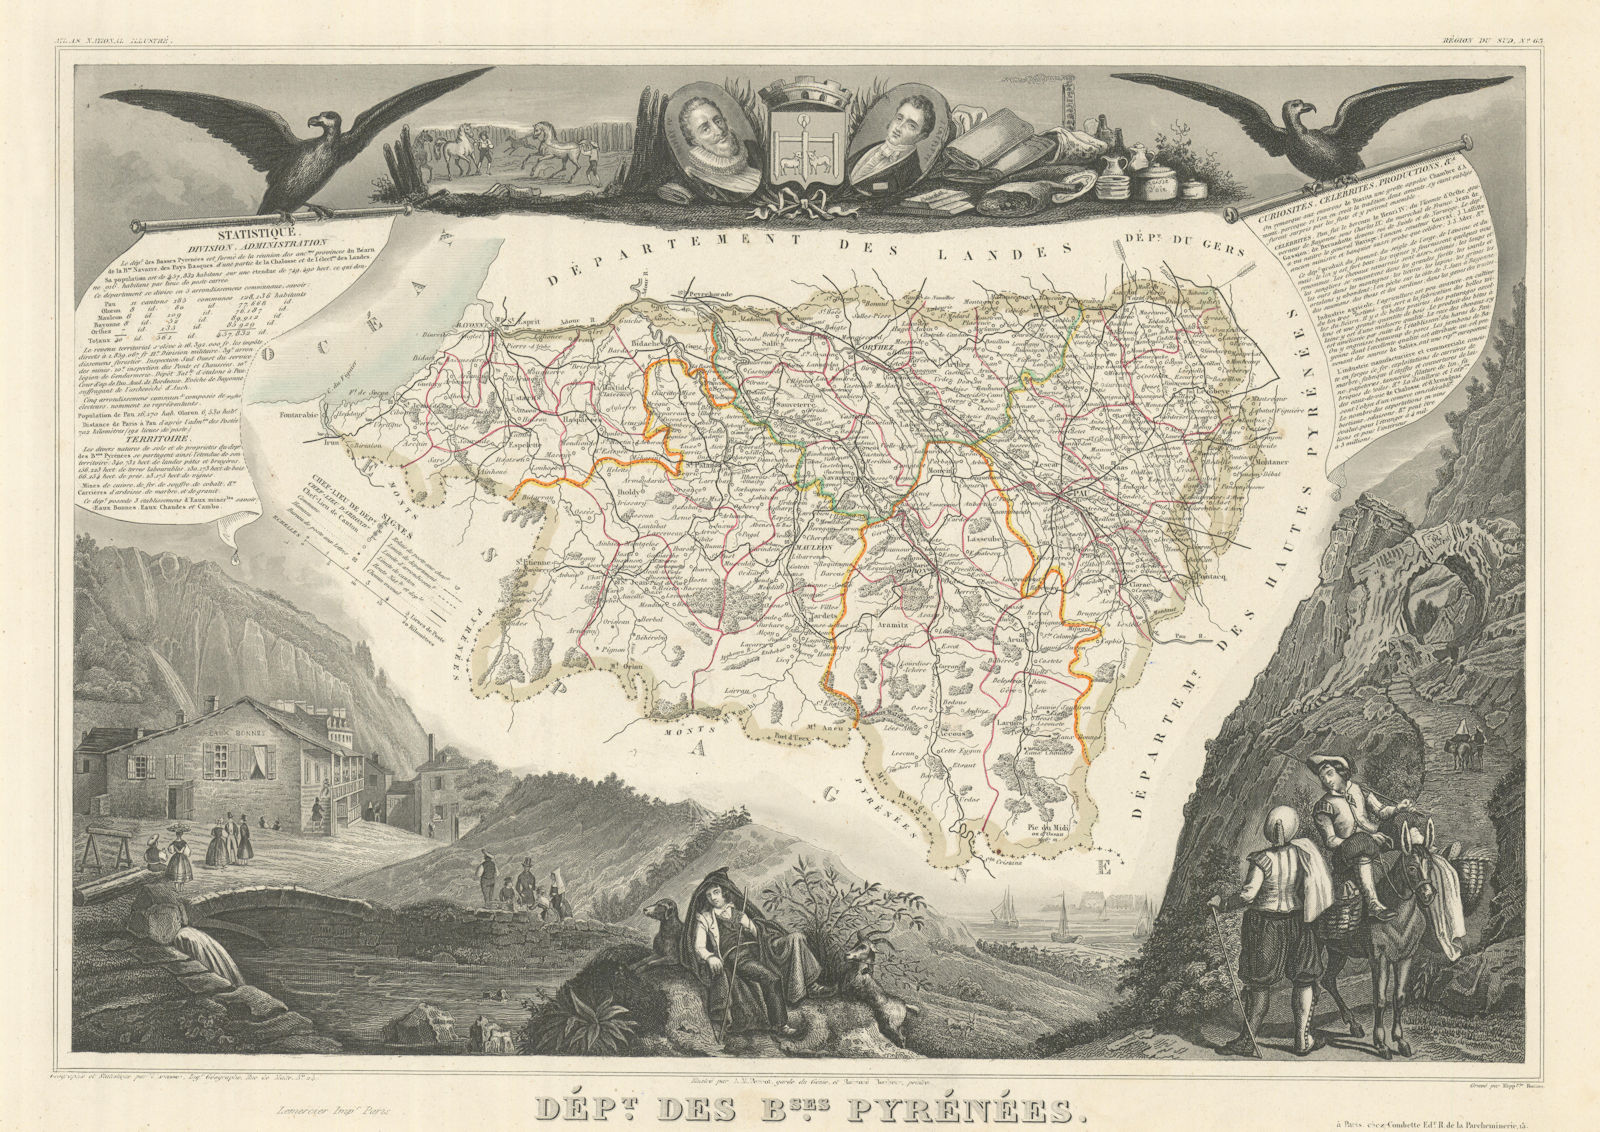 Département des BASSES-PYRÉNÉES. Pyrénées-Atlantiques. LEVASSEUR 1856 old map